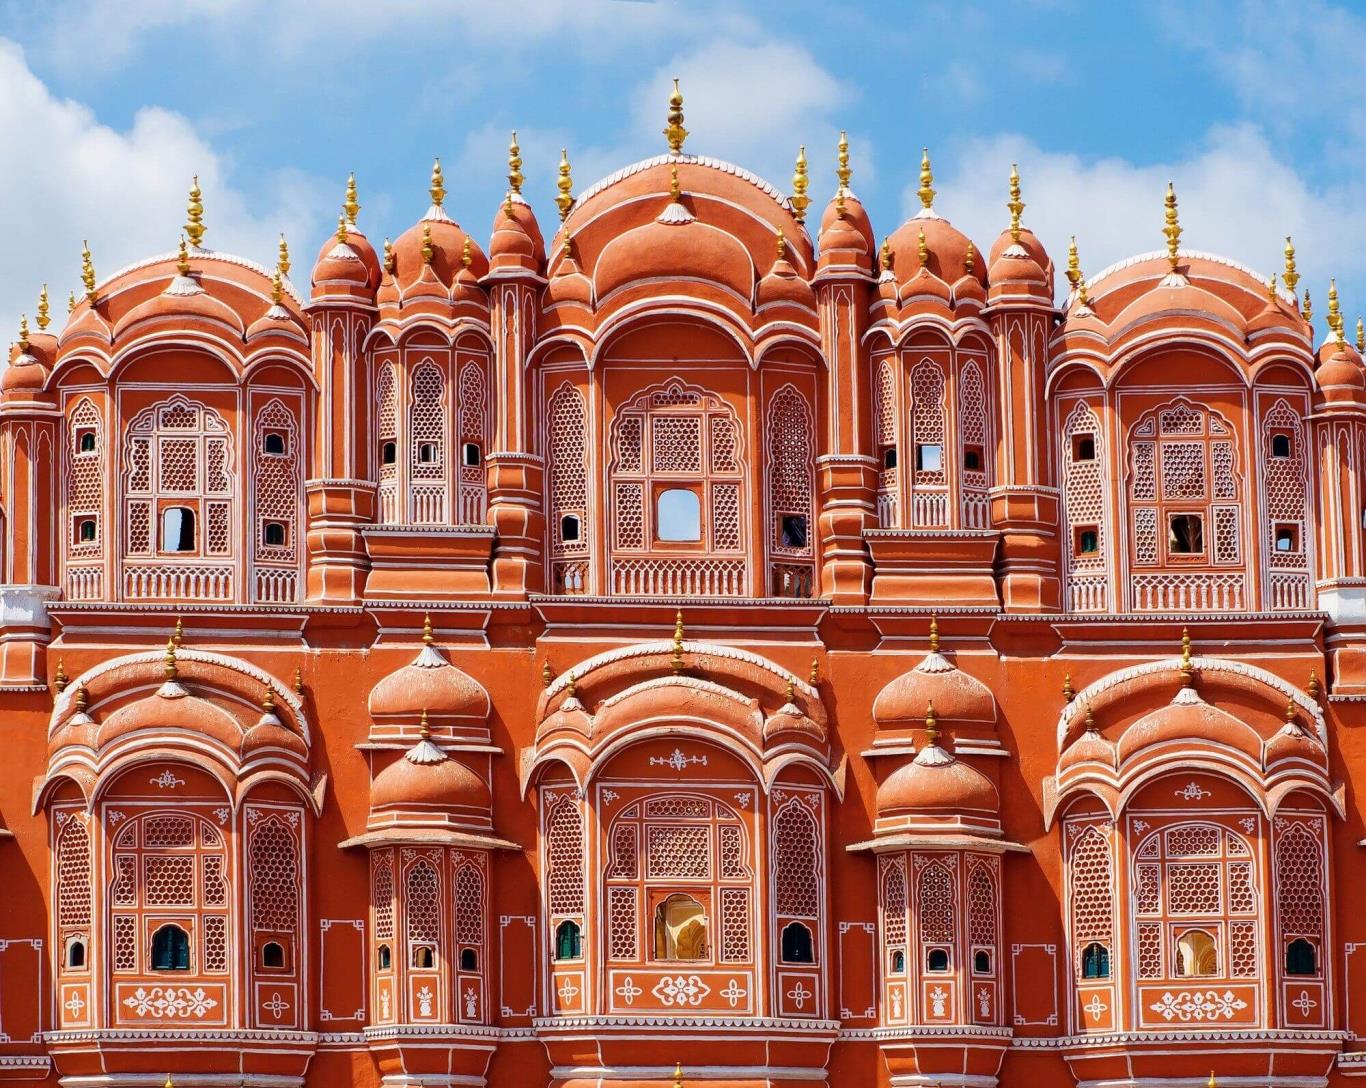 Địa điểm du lịch Ấn Độ đầu tiên được nhắc đến là cung điện Hawa Mahal.